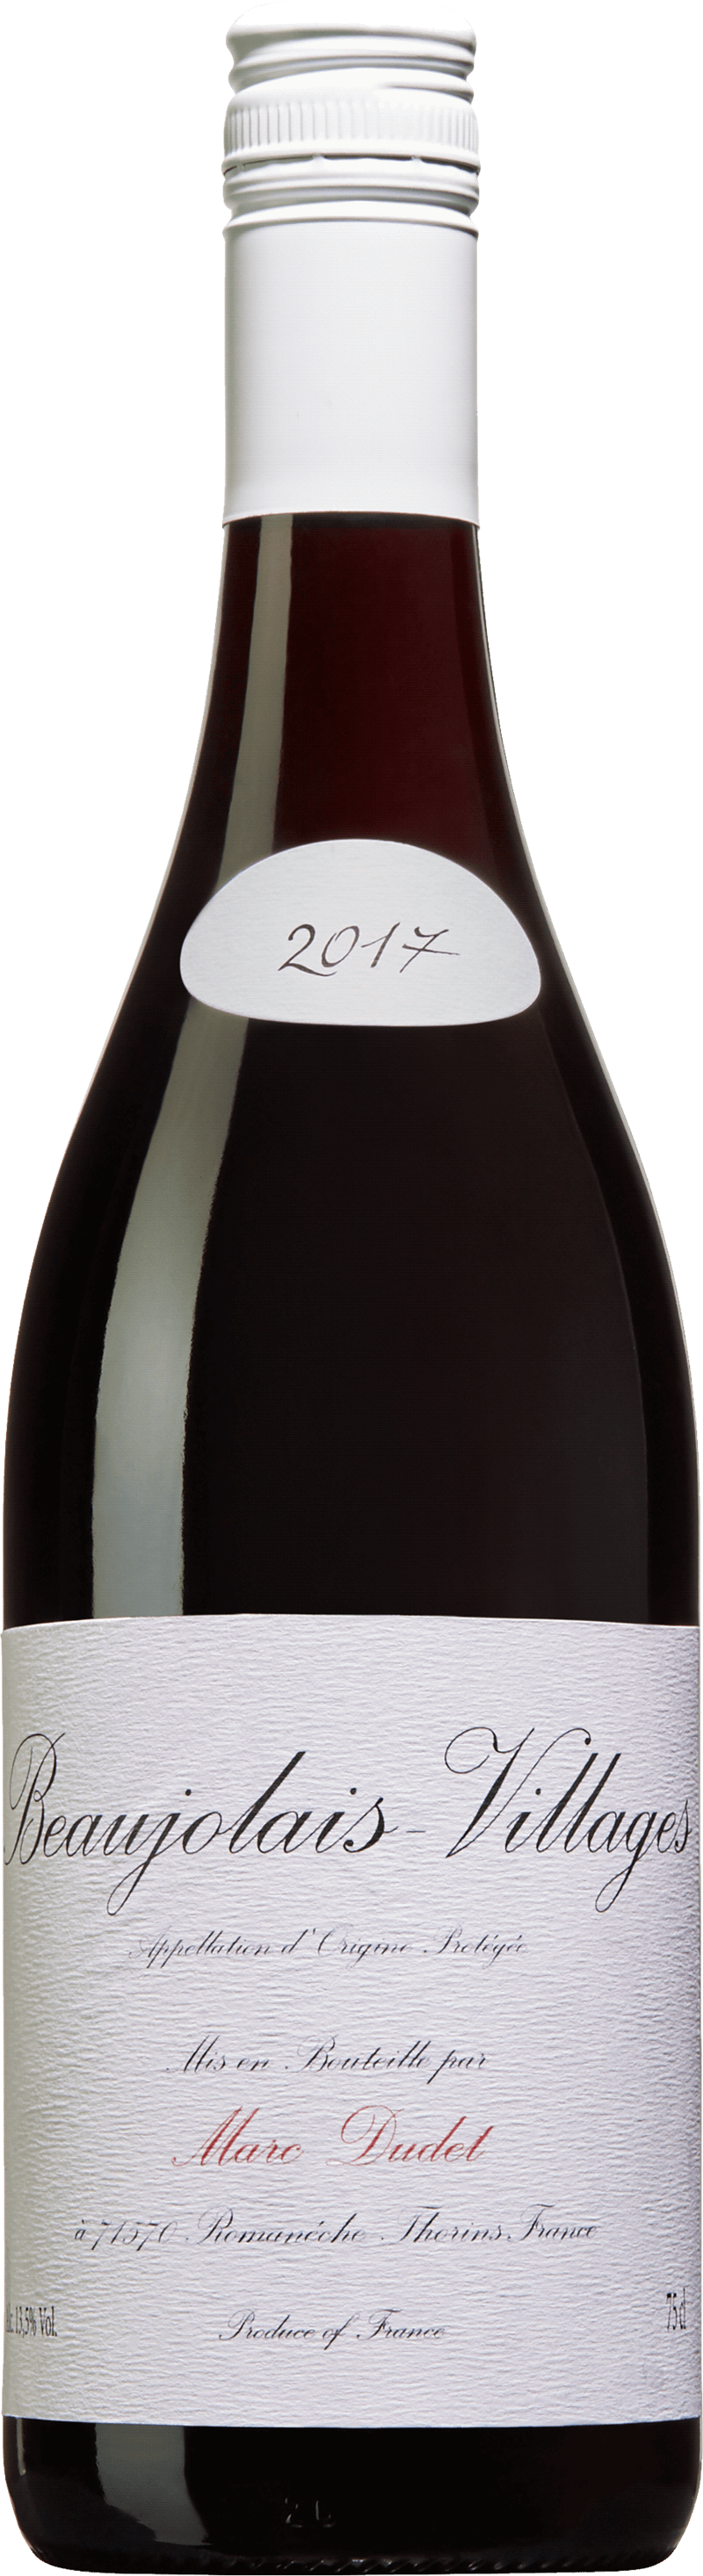 Beaujolais Villages M. Dudet 2018, ett rött vin från Frankrike, Beaujolais